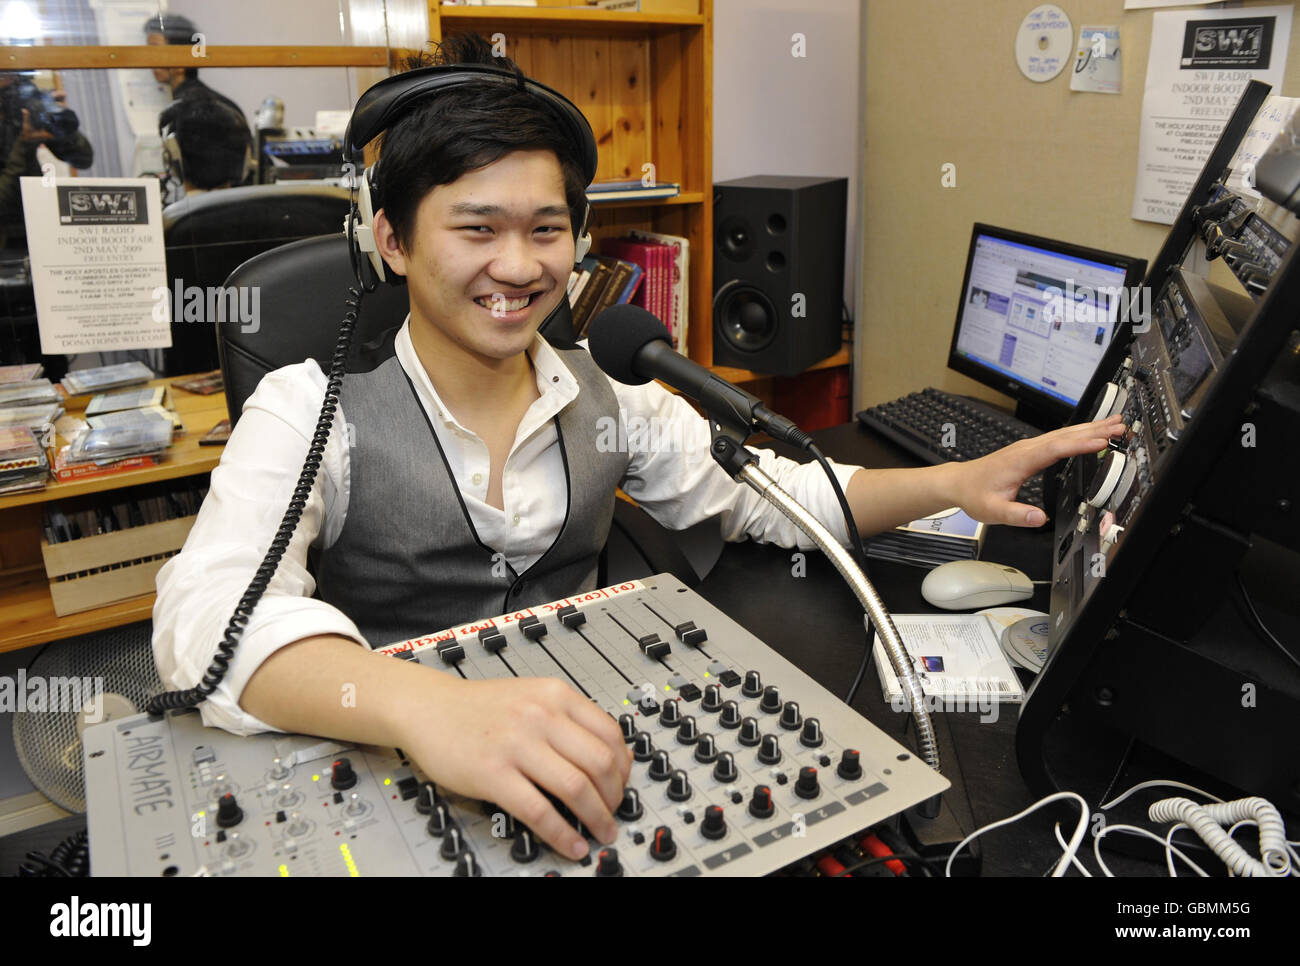 Steven Cheung, 19 ans, dans le studio de radio SW1 où il DJ, après avoir annoncé sa candidature pour les prochaines élections européennes en tant que candidat indépendant au Parlement européen pour Londres. Banque D'Images